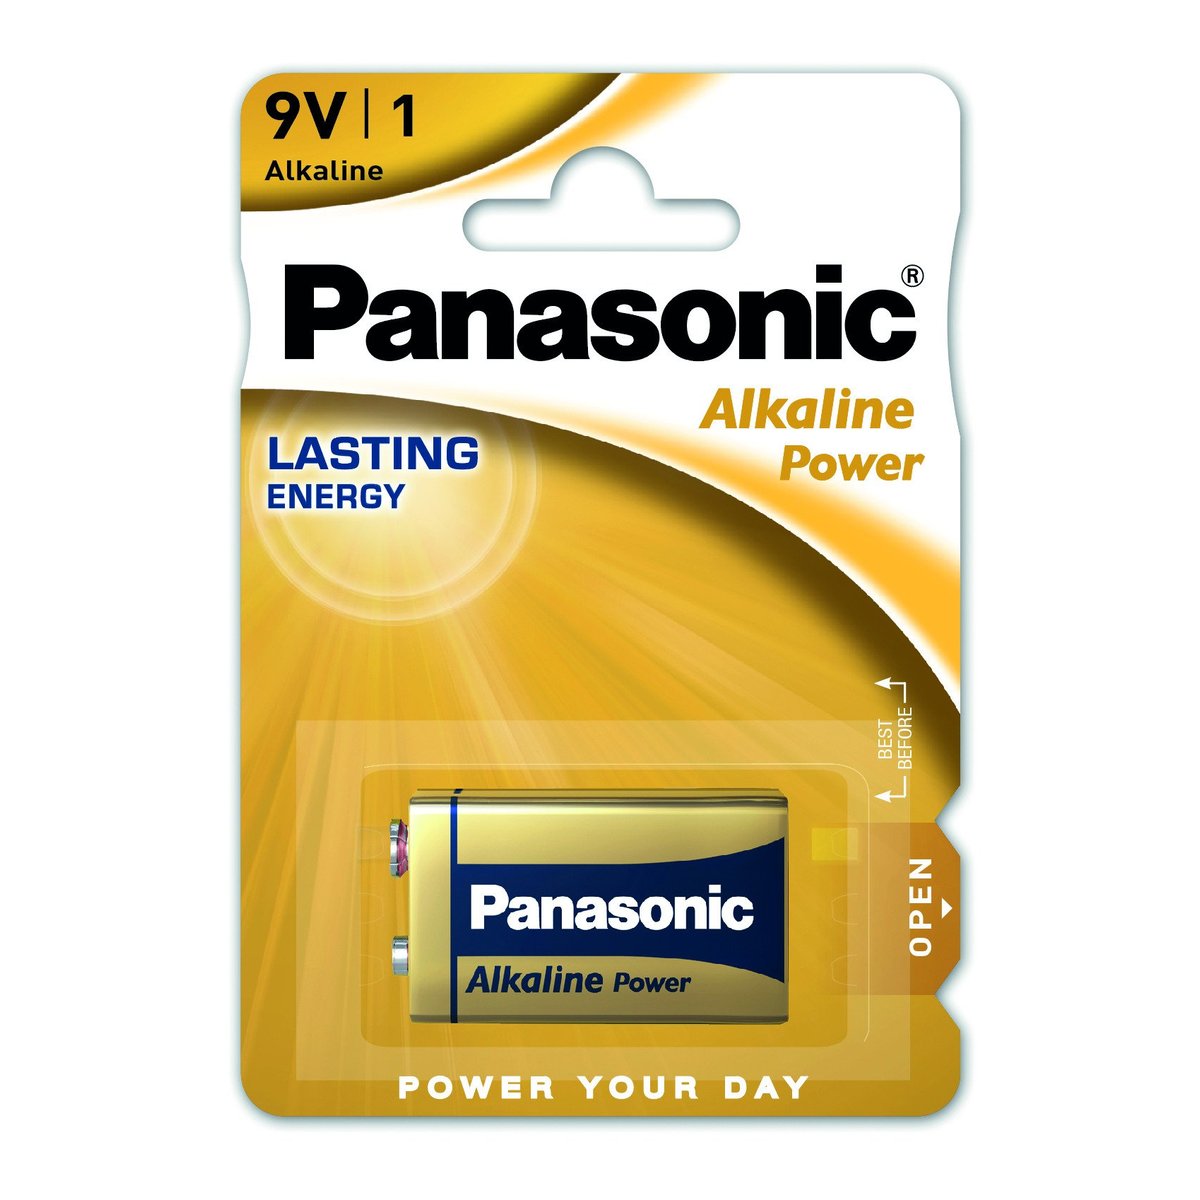 Panasonic Alkaline power 9V baterie